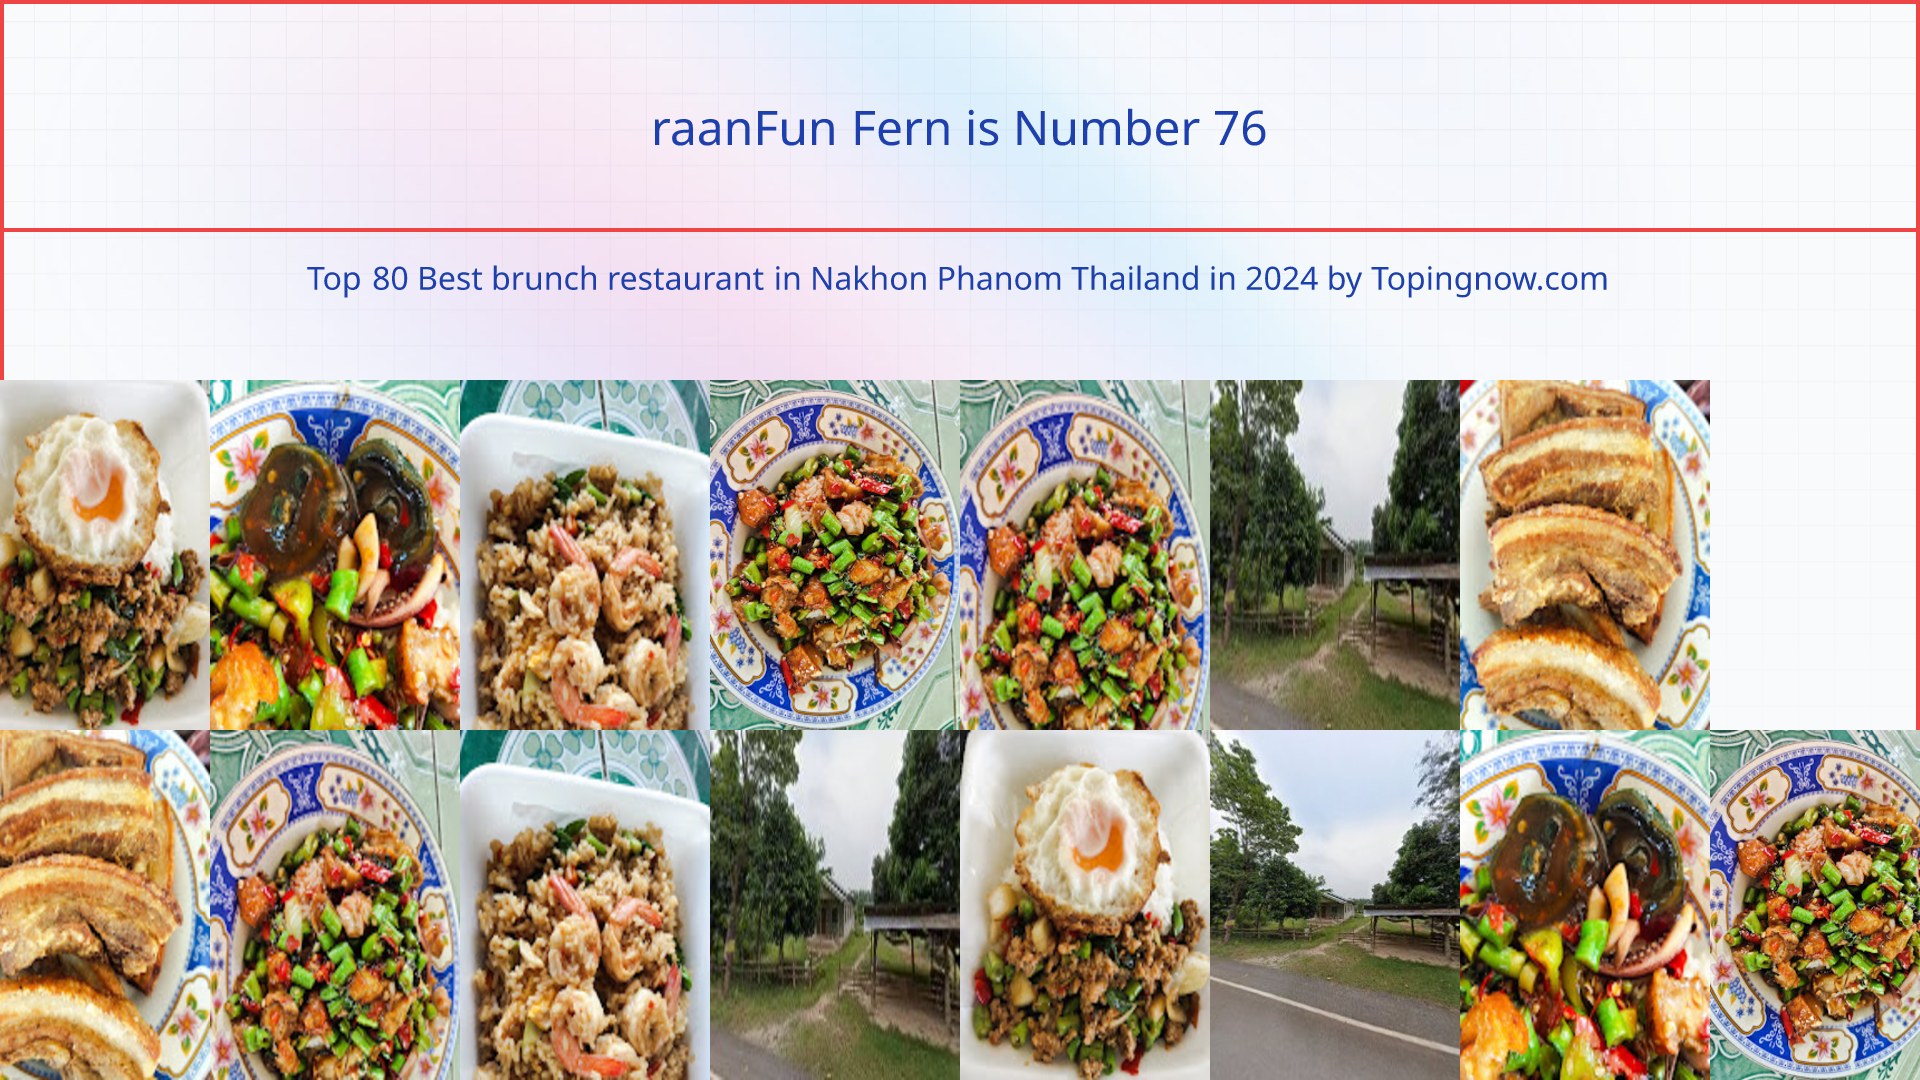 raanFun Fern: Top 80 Best brunch restaurant in Nakhon Phanom Thailand in 2024